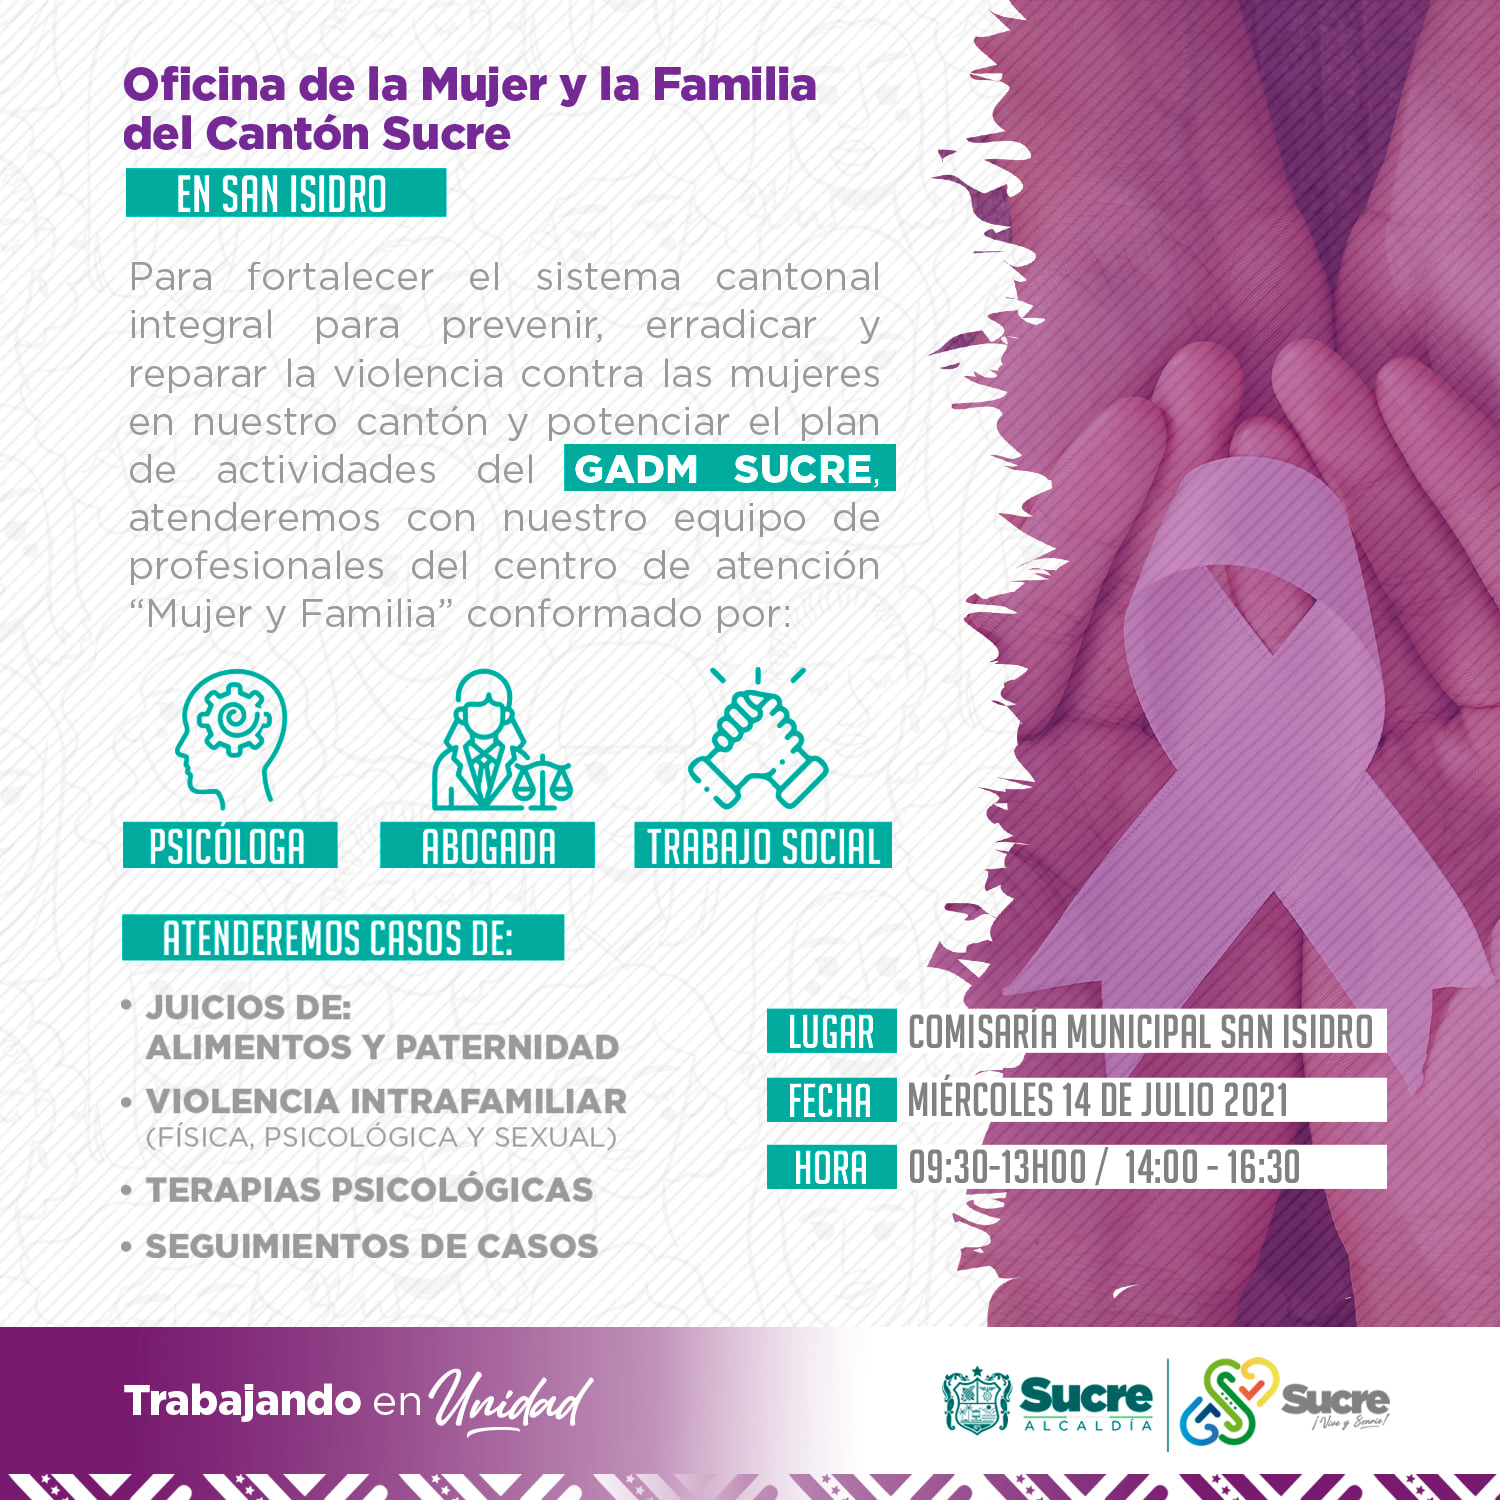 ::Oficina de la Mujer y la Familia del Cantón Sucre en San Isidro::